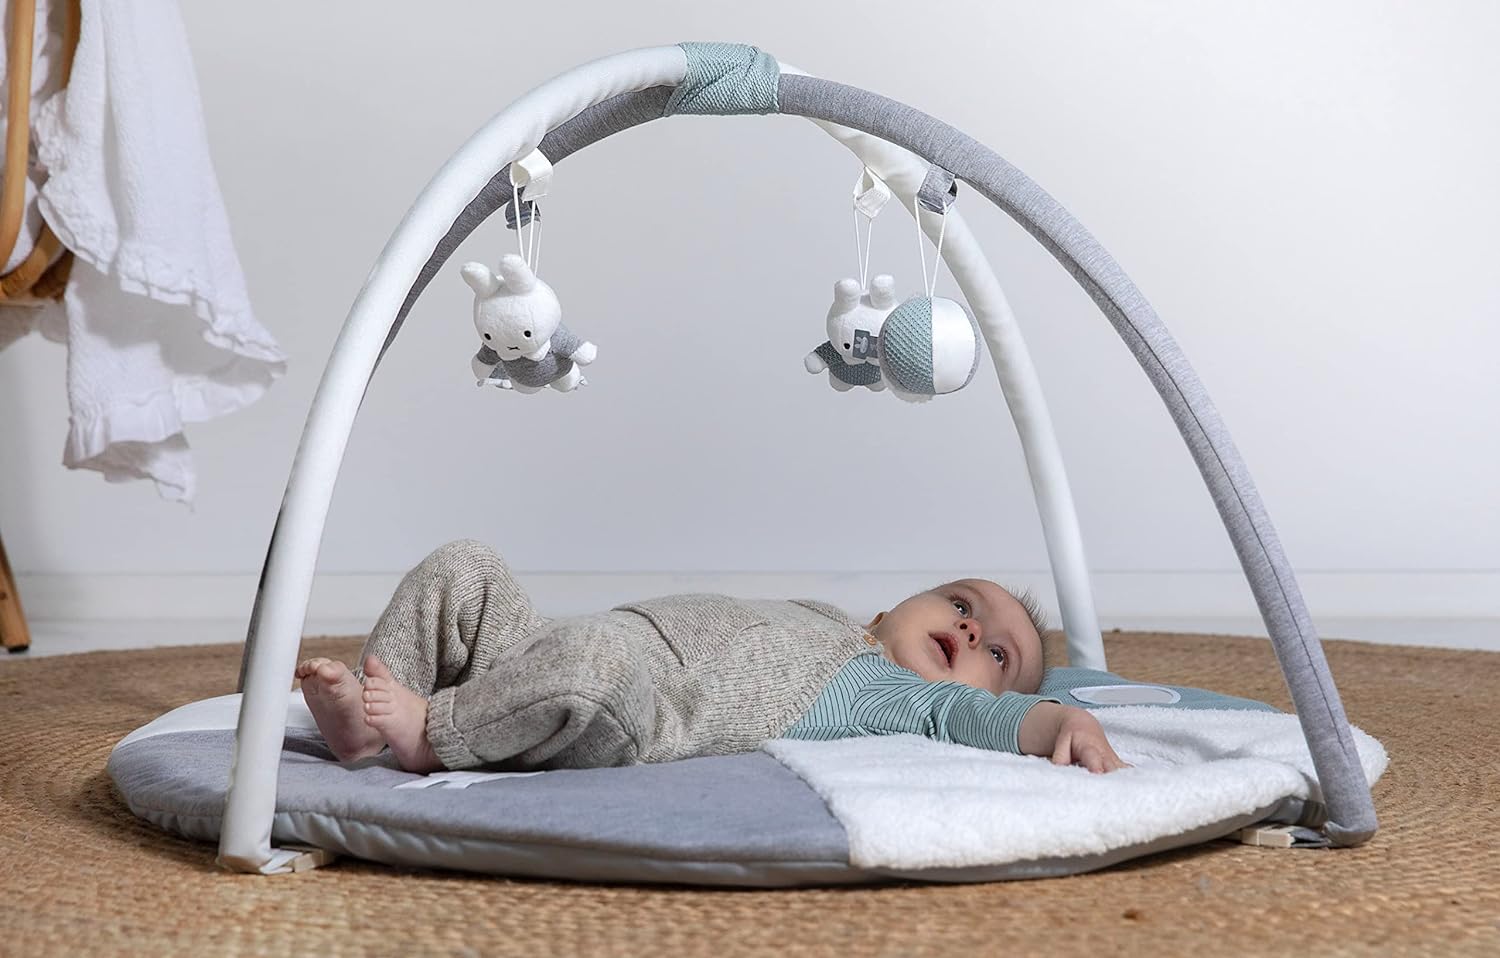 Niddy嬰兒活動健身架可清洗附有3種聲音和鏡子適合嬰兒的禮物 0m+